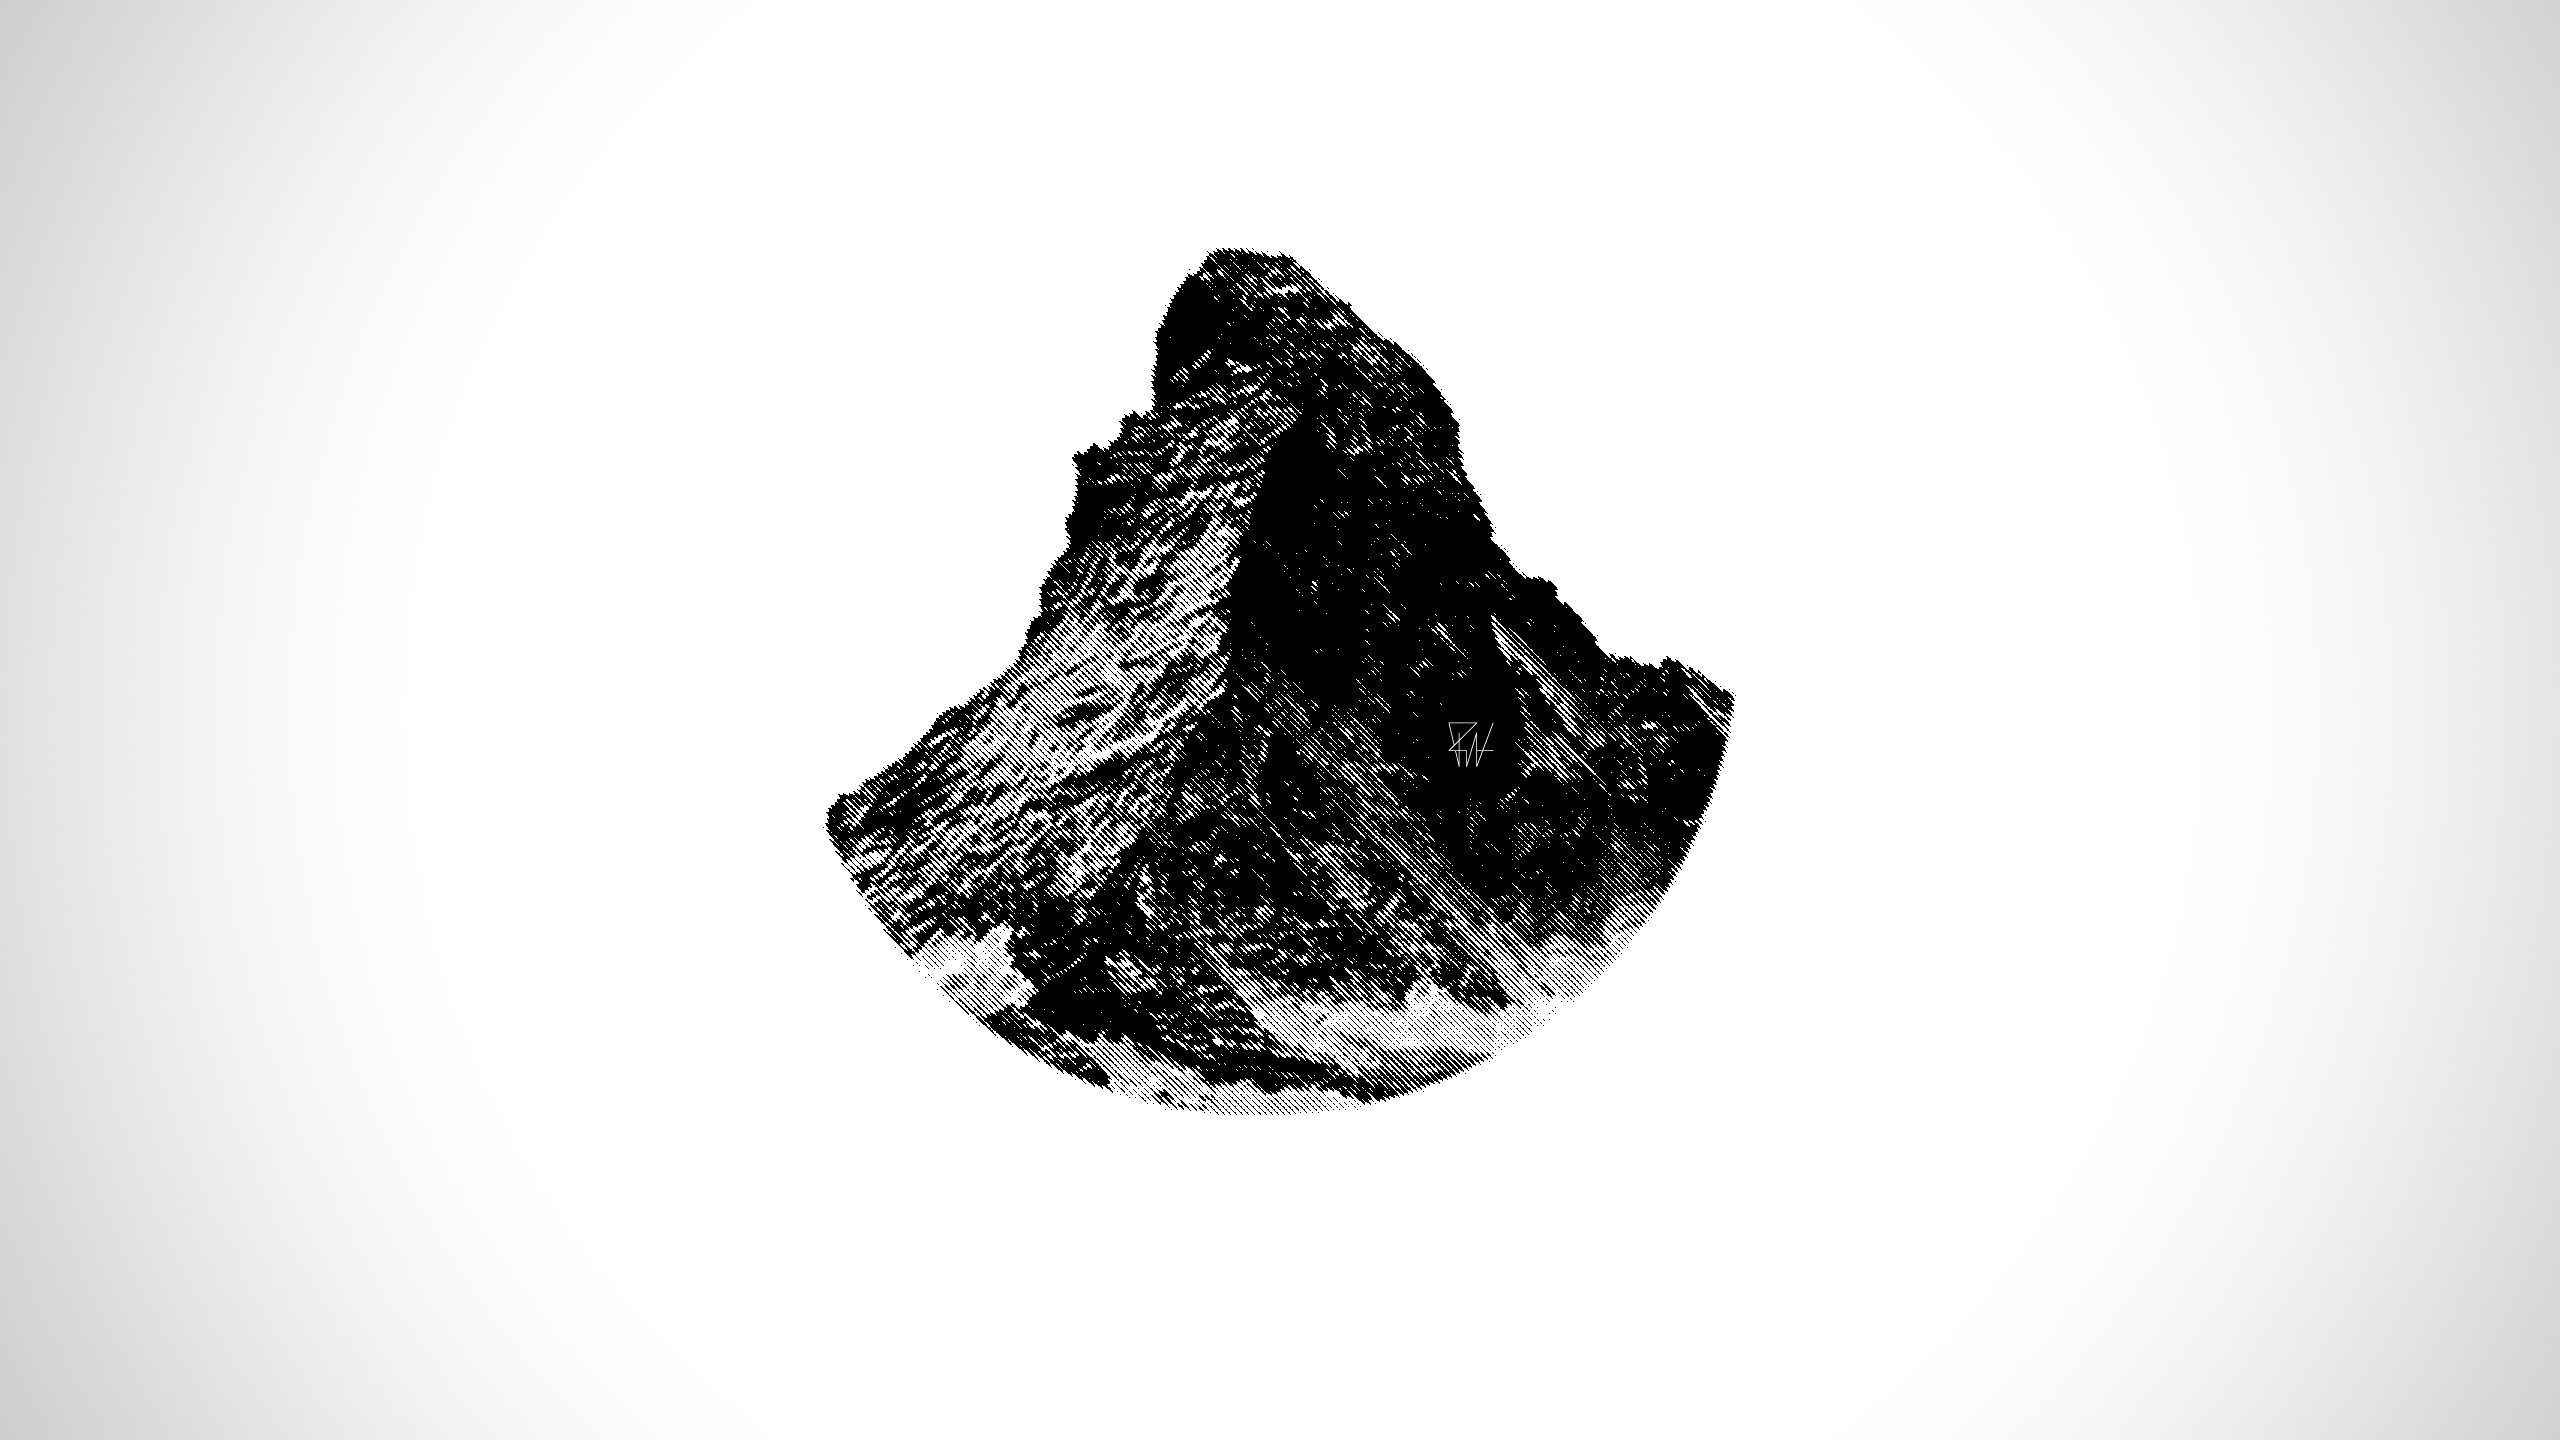 General 2560x1440 minimalism artwork simple background Switzerland mountains Matterhorn monochrome